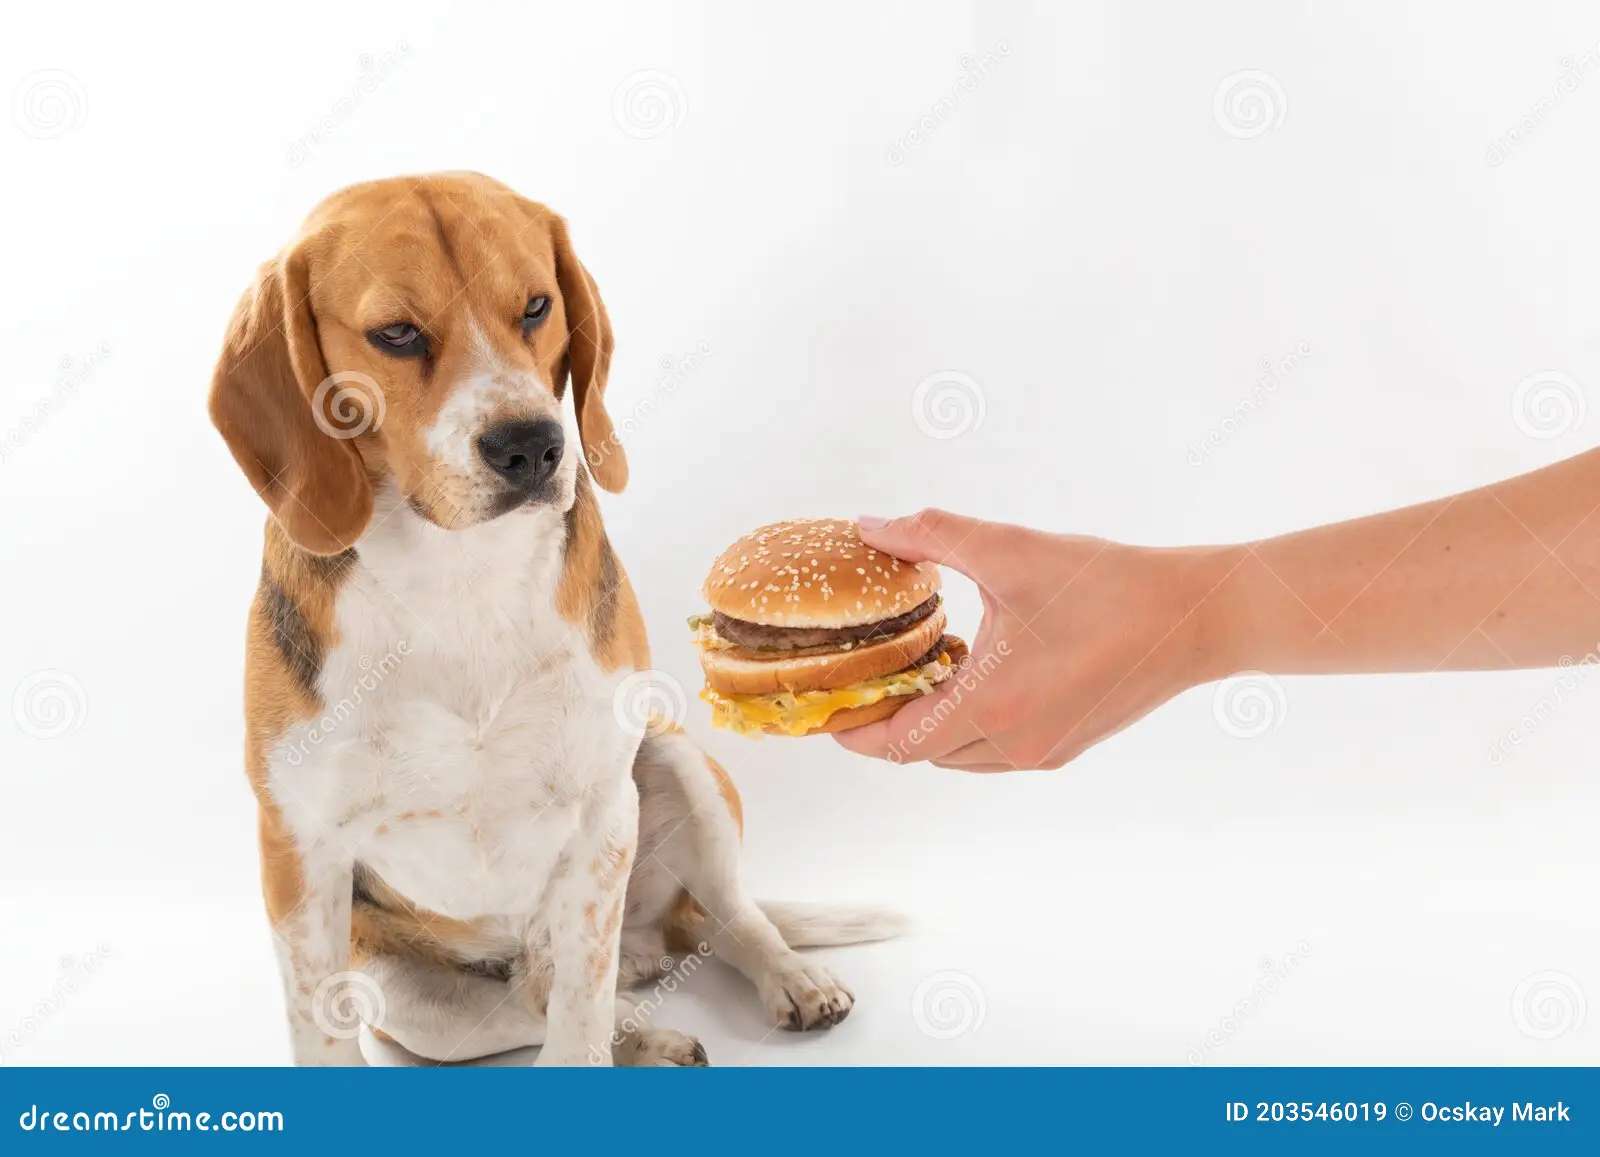 Пес і бургер скласти пазл онлайн з фото